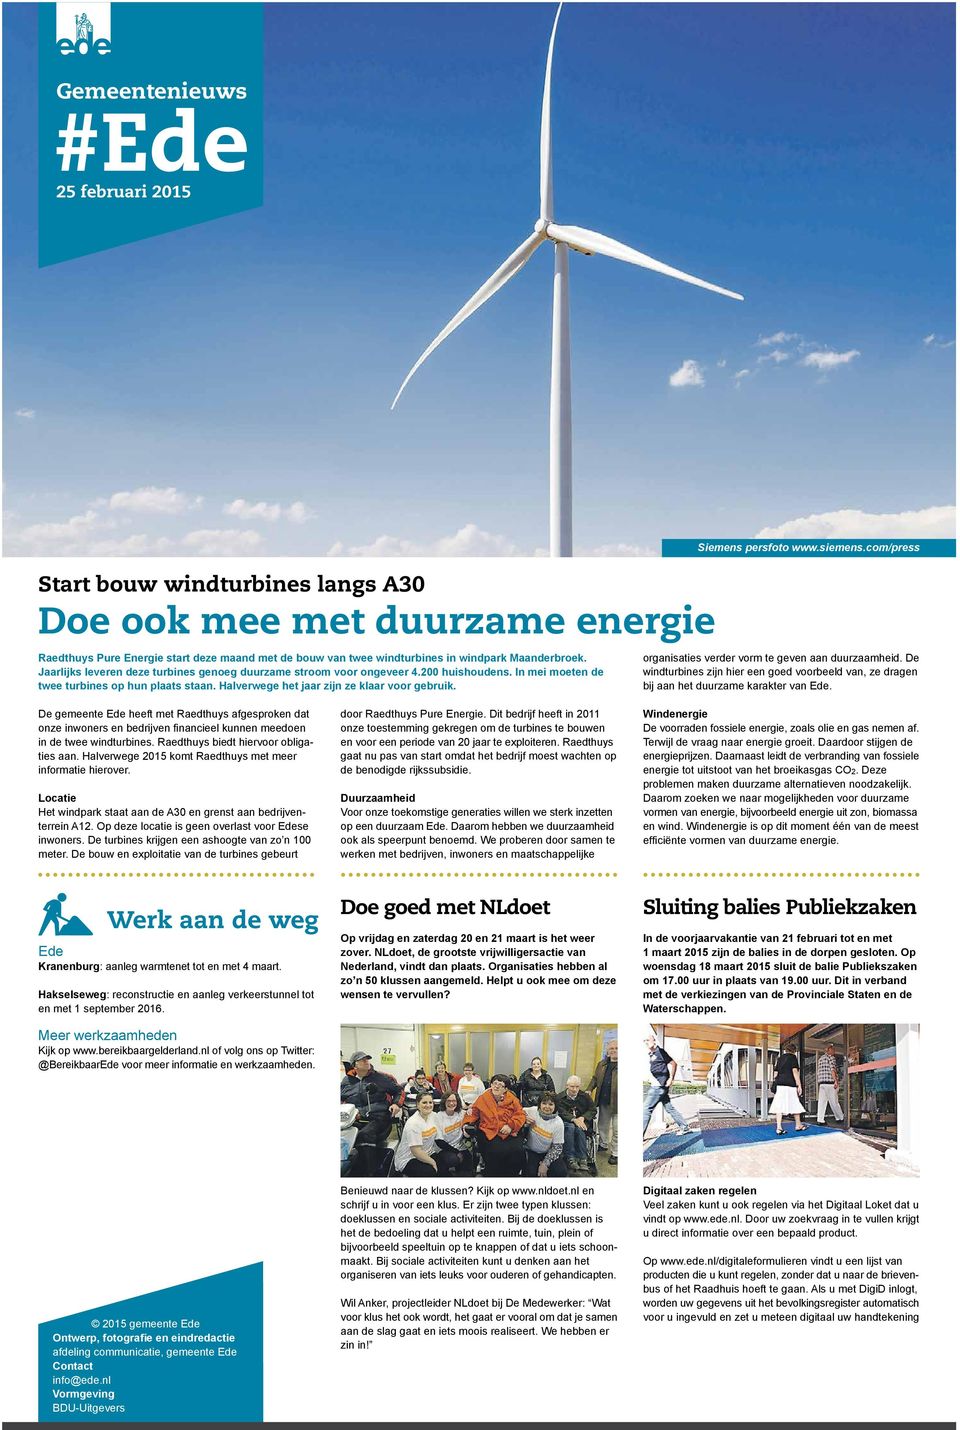 Siemens persfoto www.siemens.com/press organisaties verder vorm te geven aan duurzaamheid. De windturbines zijn hier een goed voorbeeld van, ze dragen bij aan het duurzame karakter van.